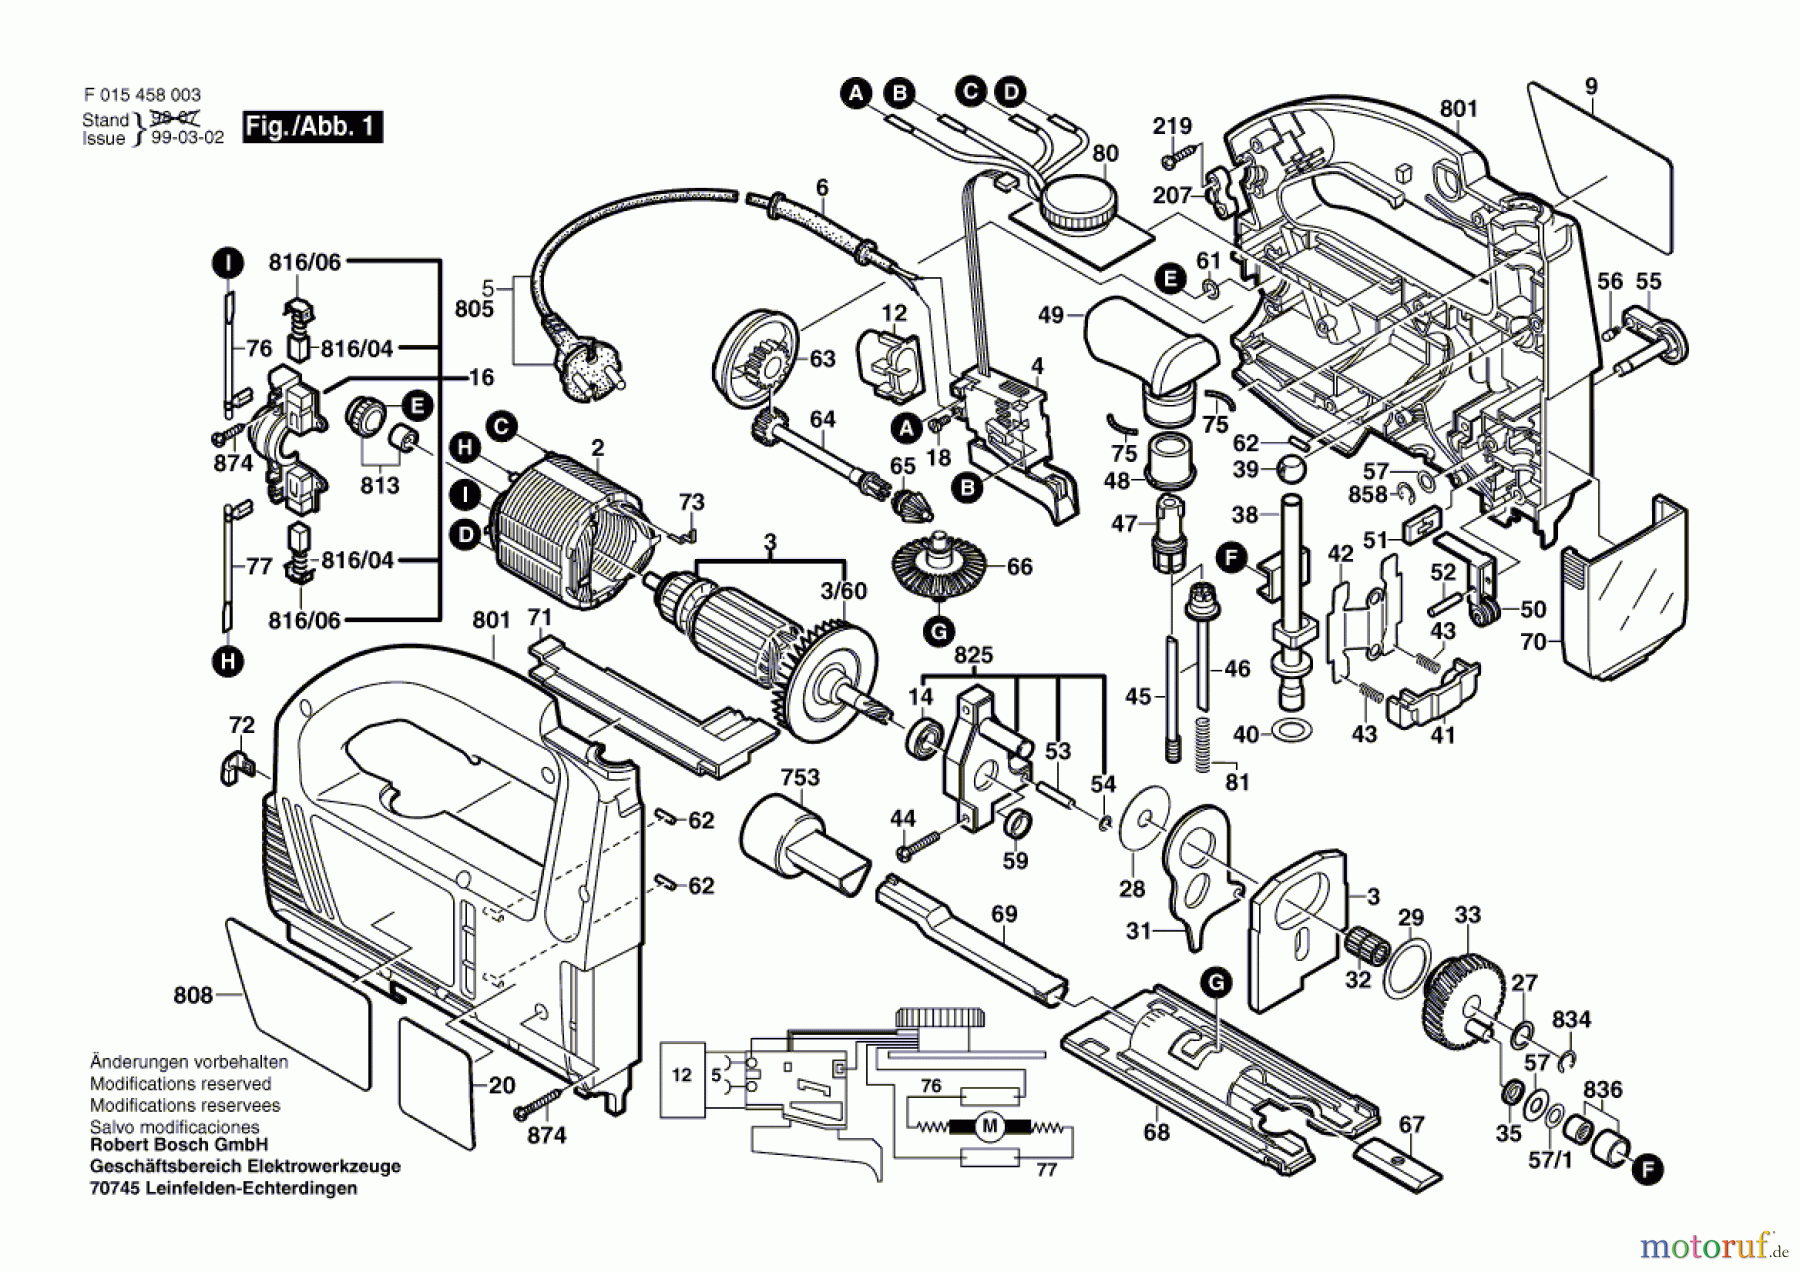  Bosch Werkzeug Stichsäge 4580 Seite 1